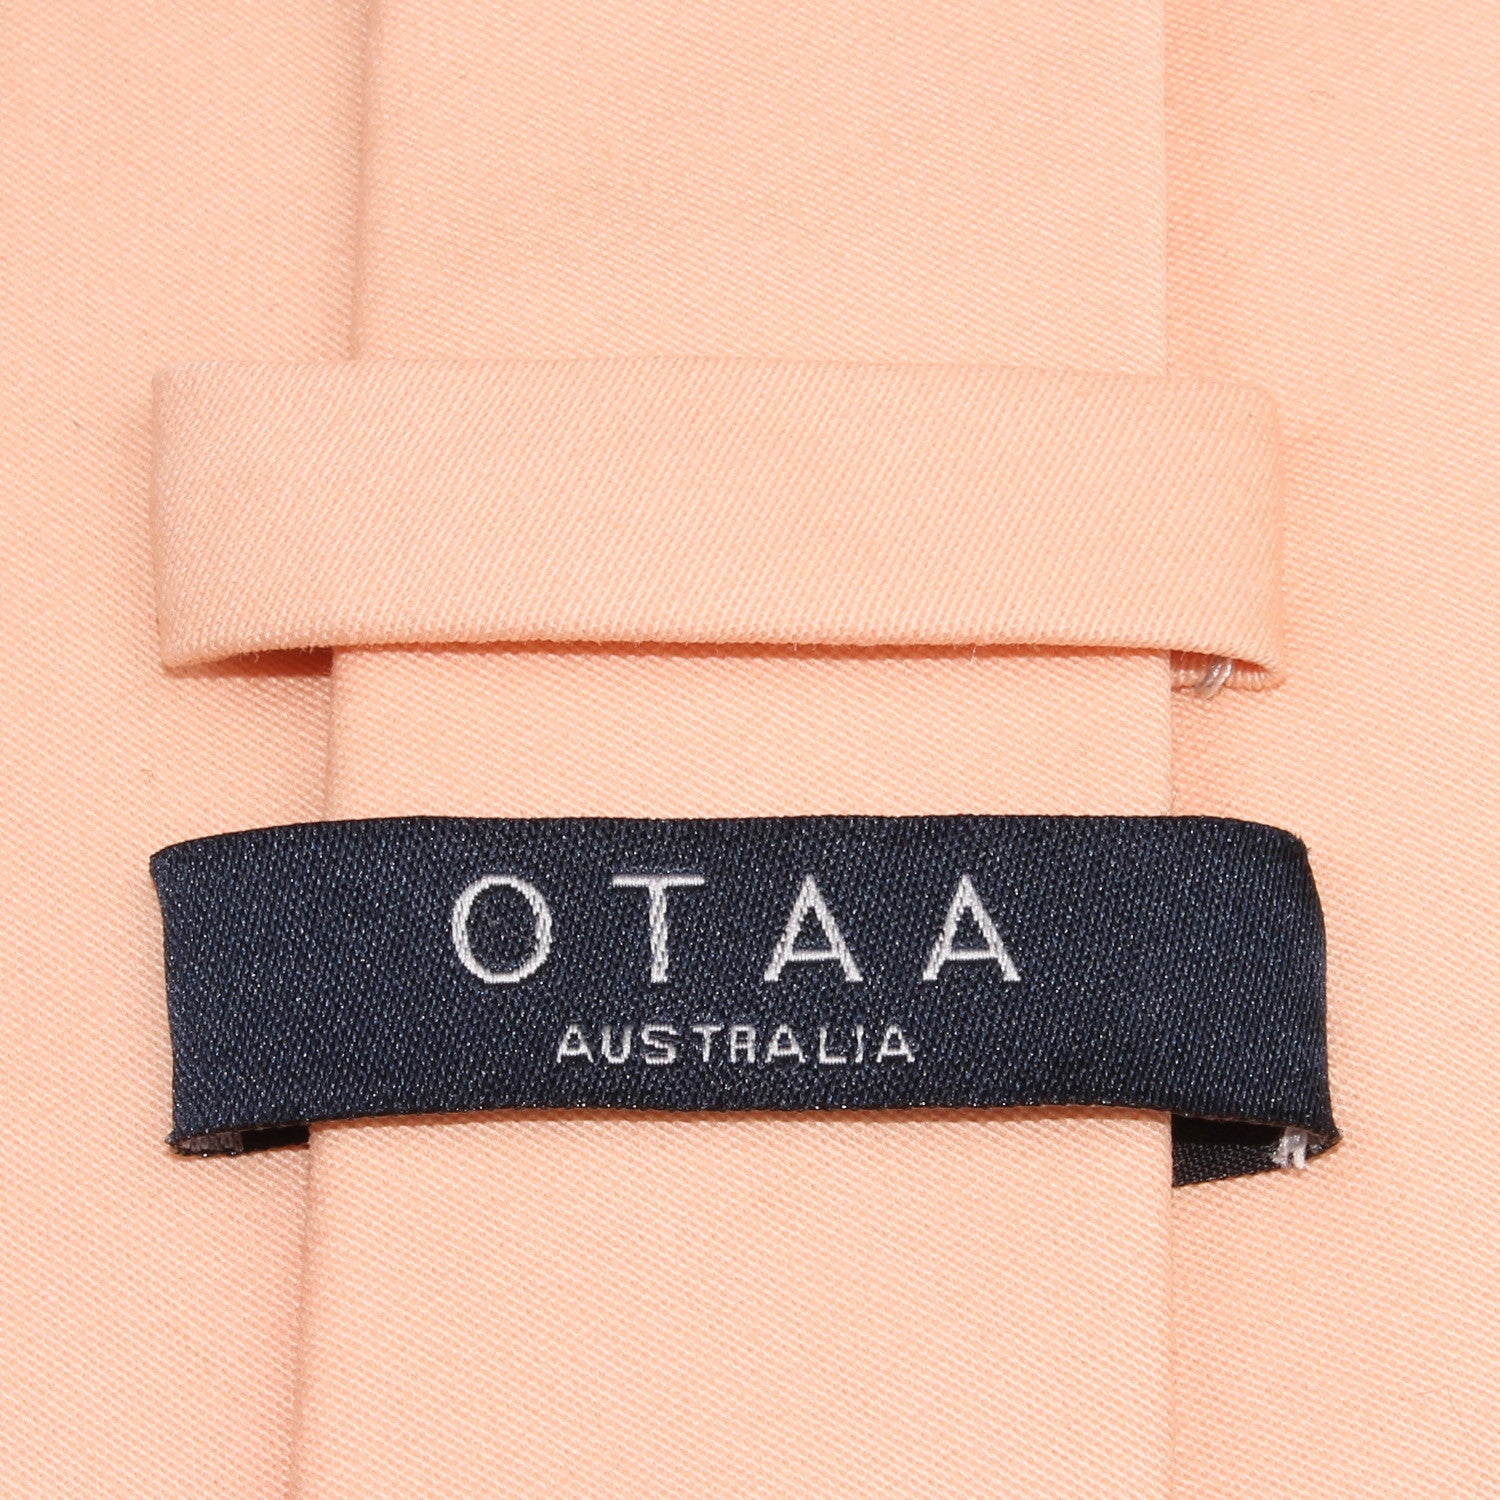 Peach Cotton Skinny Tie OTAA Australia